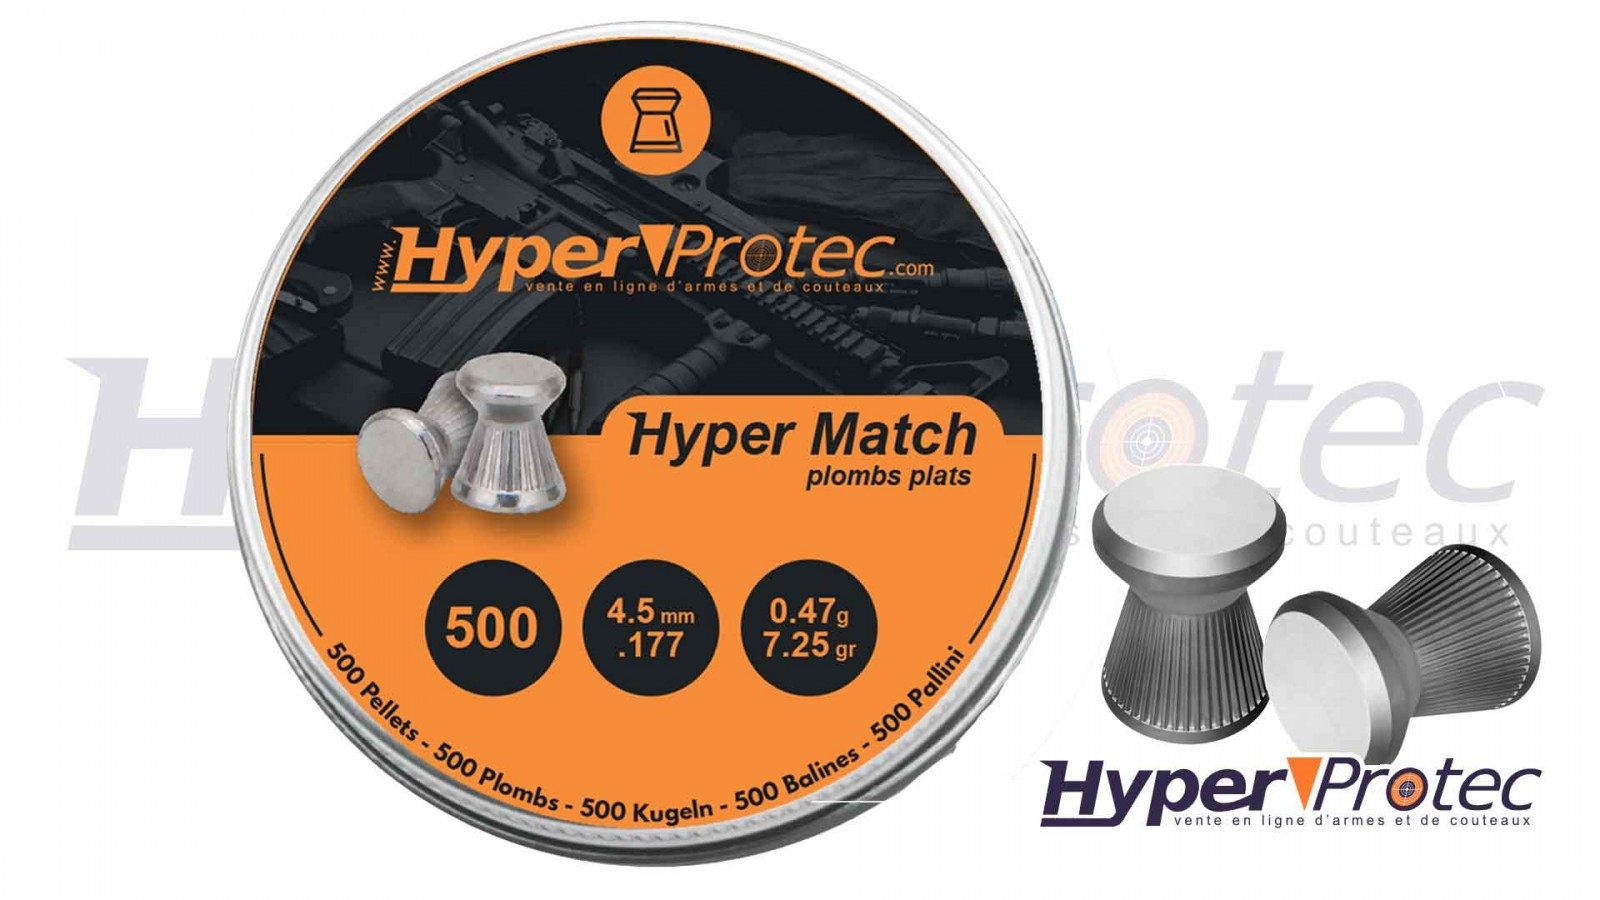 Plomb 4.5 mm HyperProtec Hyper Match